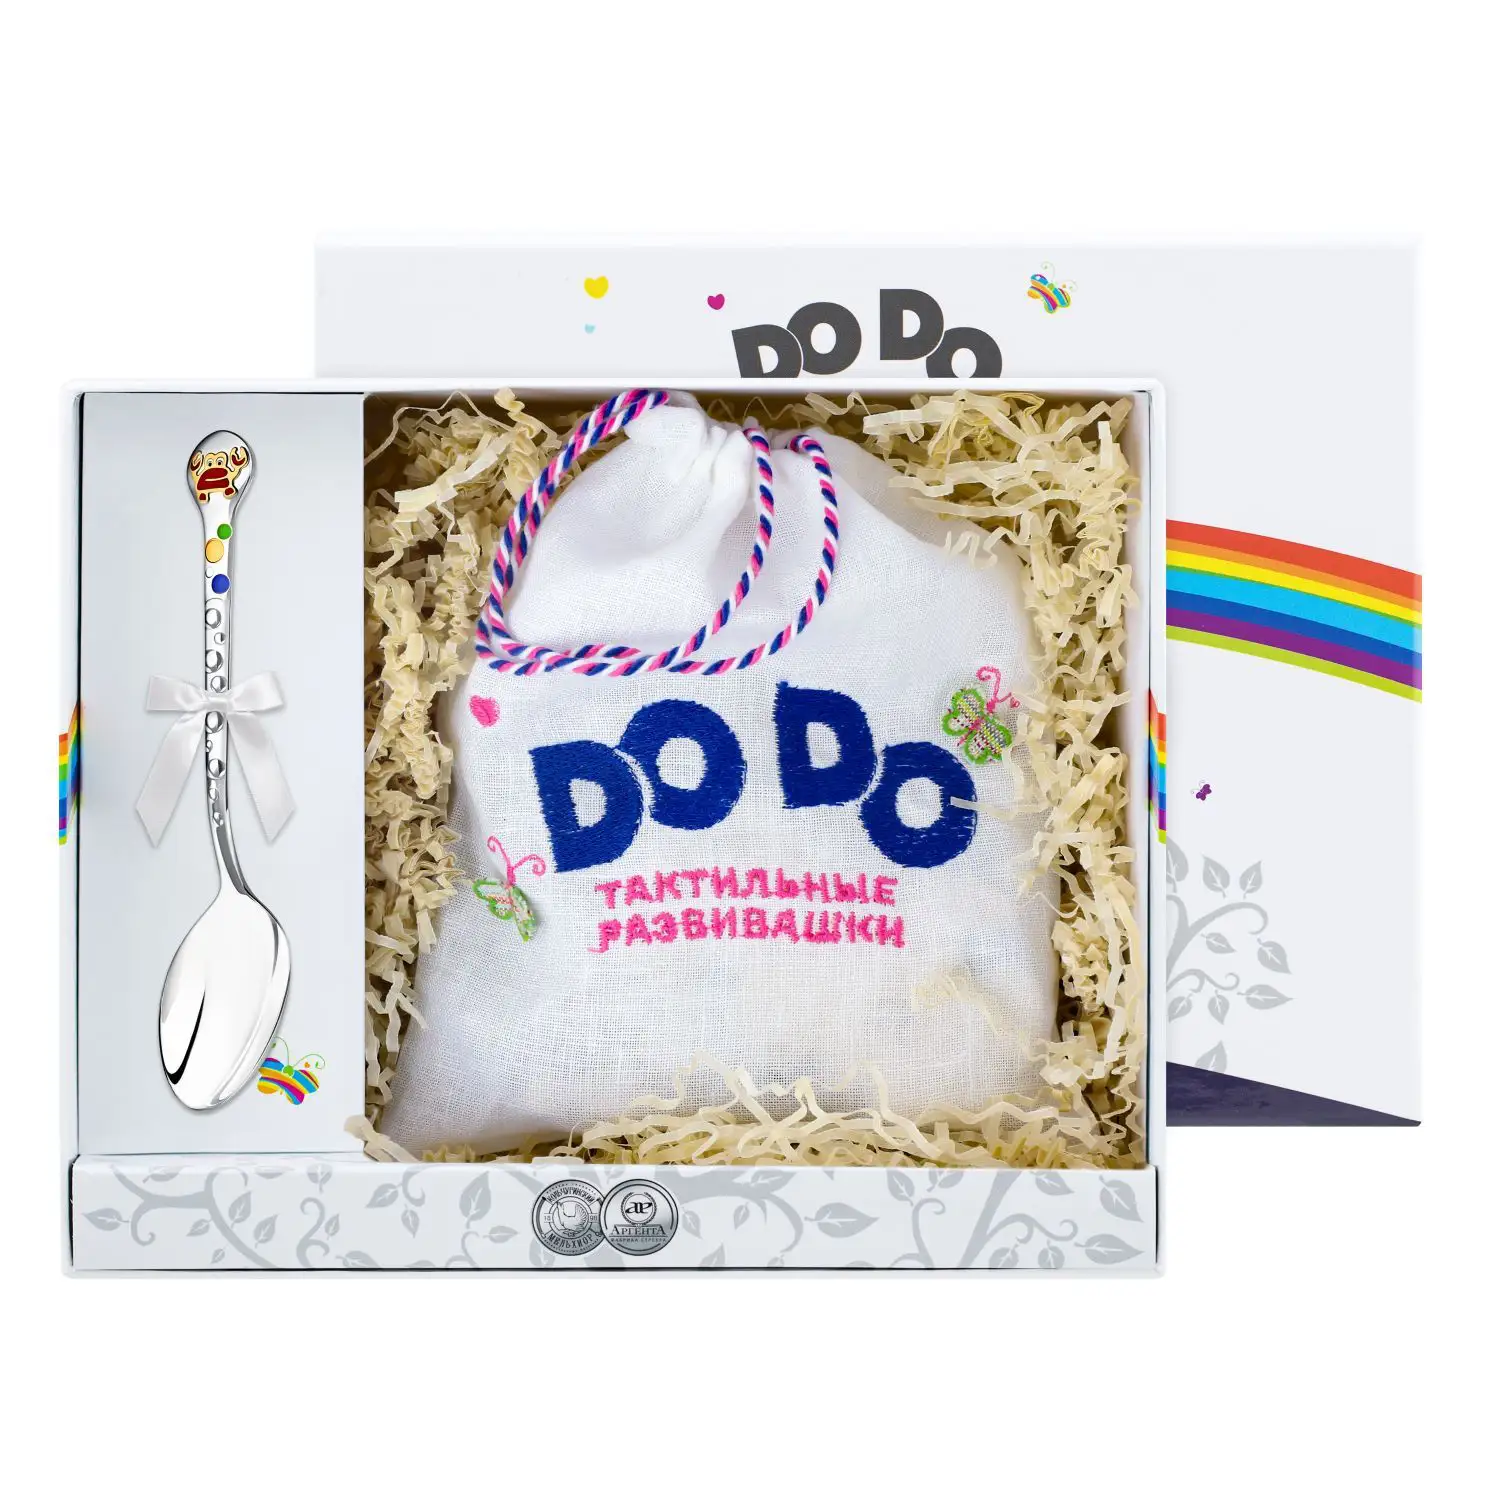 Набор детский DODO Крабик: пазл и ложка с позолотой и эмалью (Серебро 925) набор детский dodo котенок ложка и пазл с позолотой и эмалью серебро 925